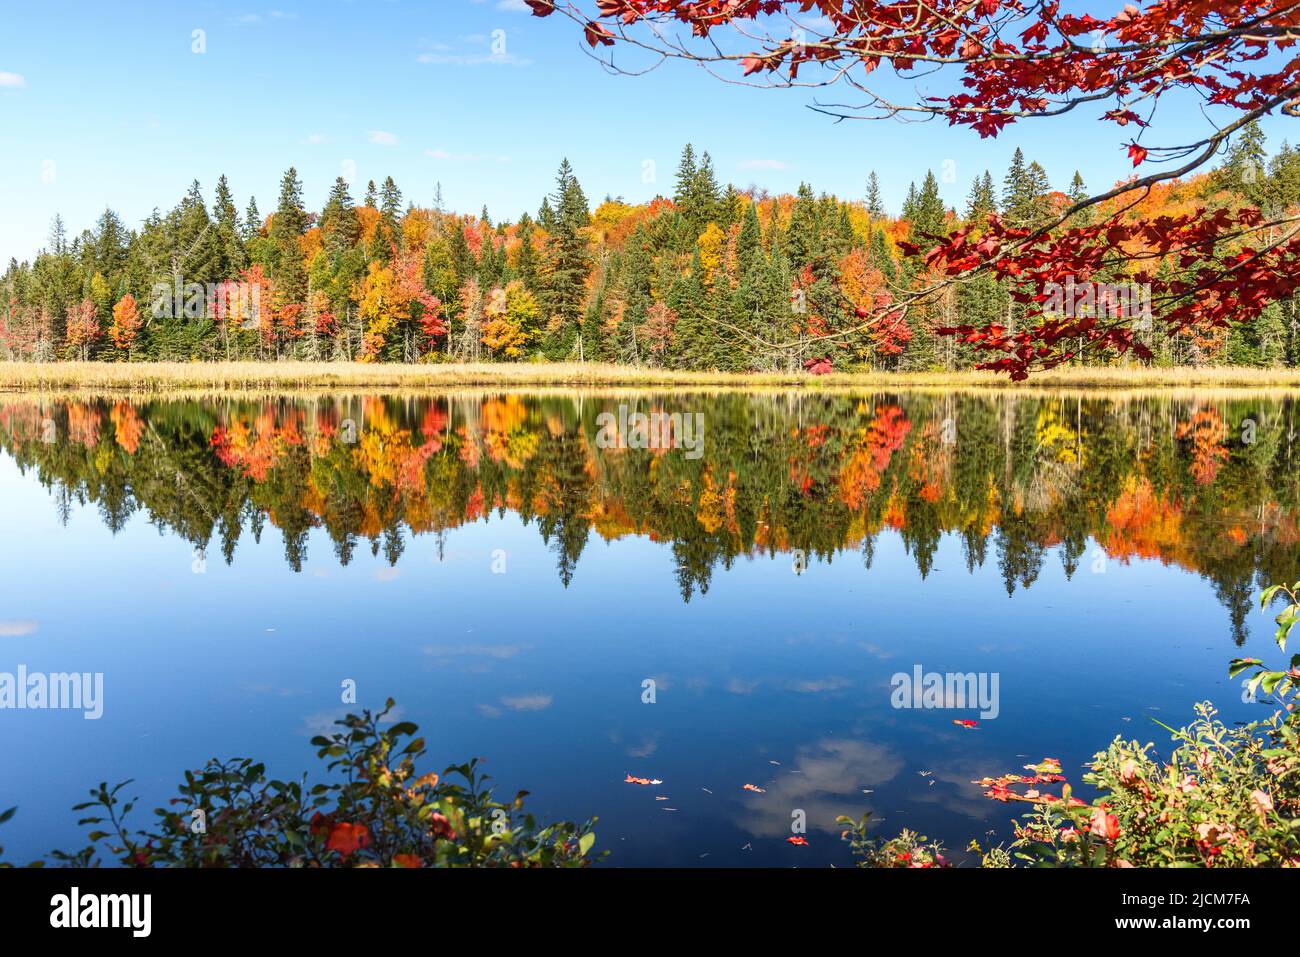 Bosque de otoño que se refleja en las tranquilas aguas de un lago en un soleado día de otoño. Fondo natural. Foto de stock